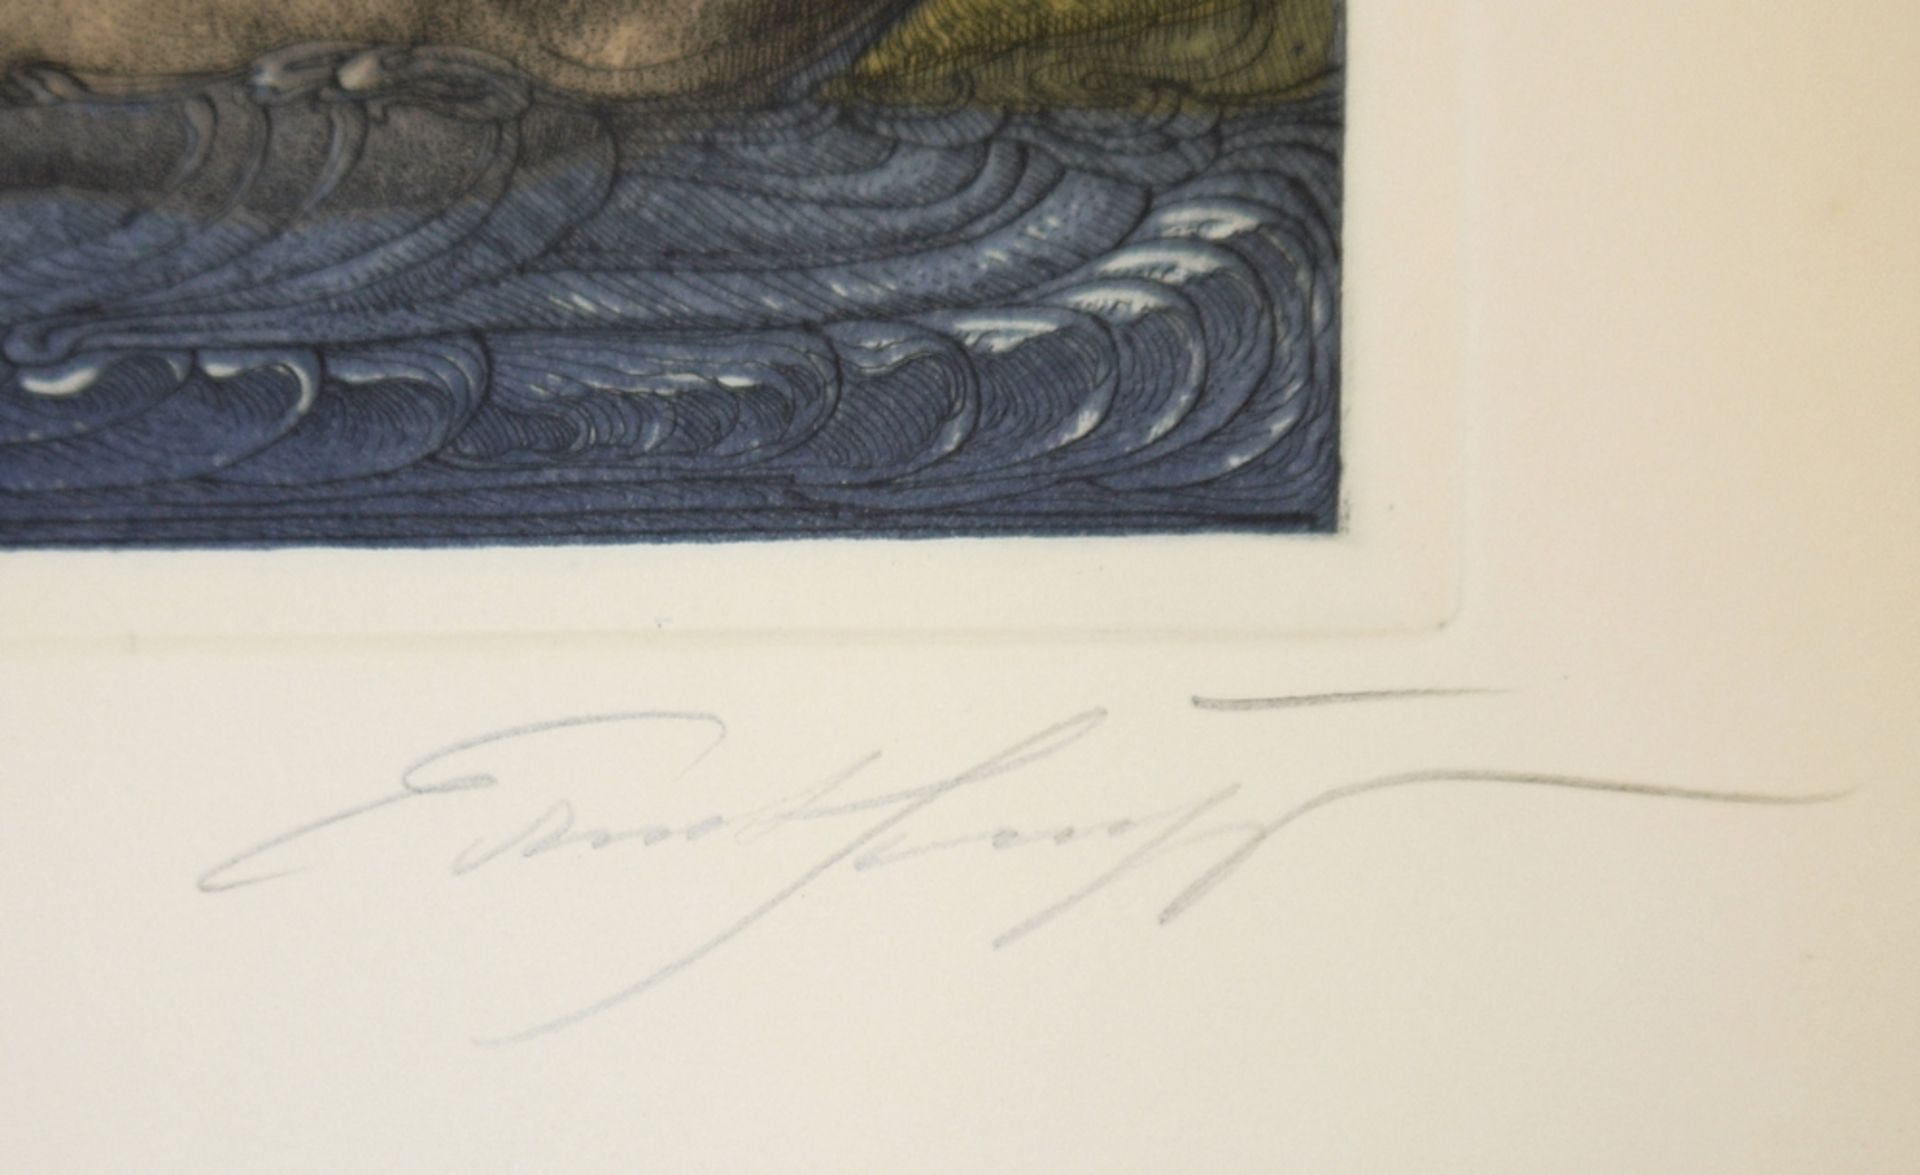 Ernst Fuchs, "Die Bachnymphe", signierte Farbradierung von 1976 - Image 2 of 2